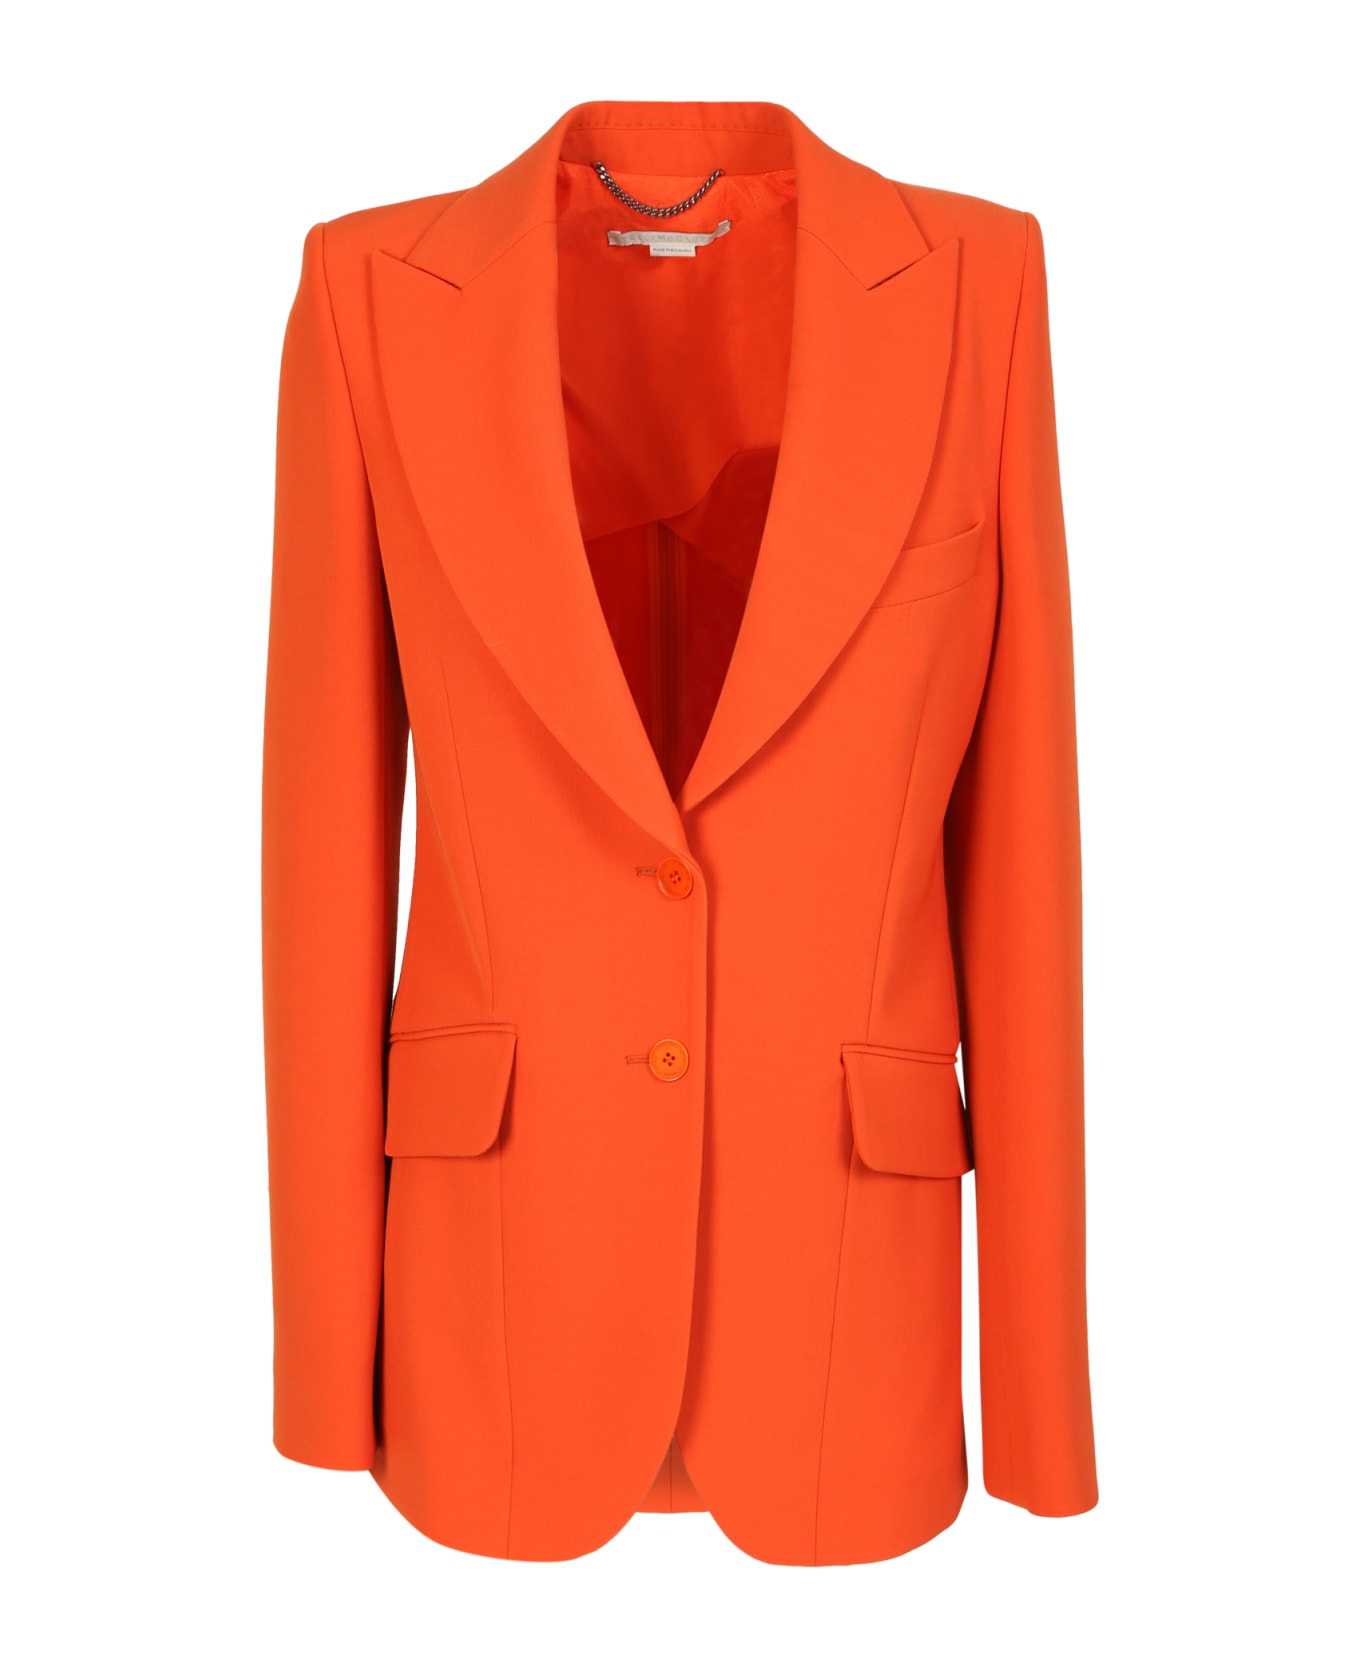 Stella McCartney Jacket - Orange